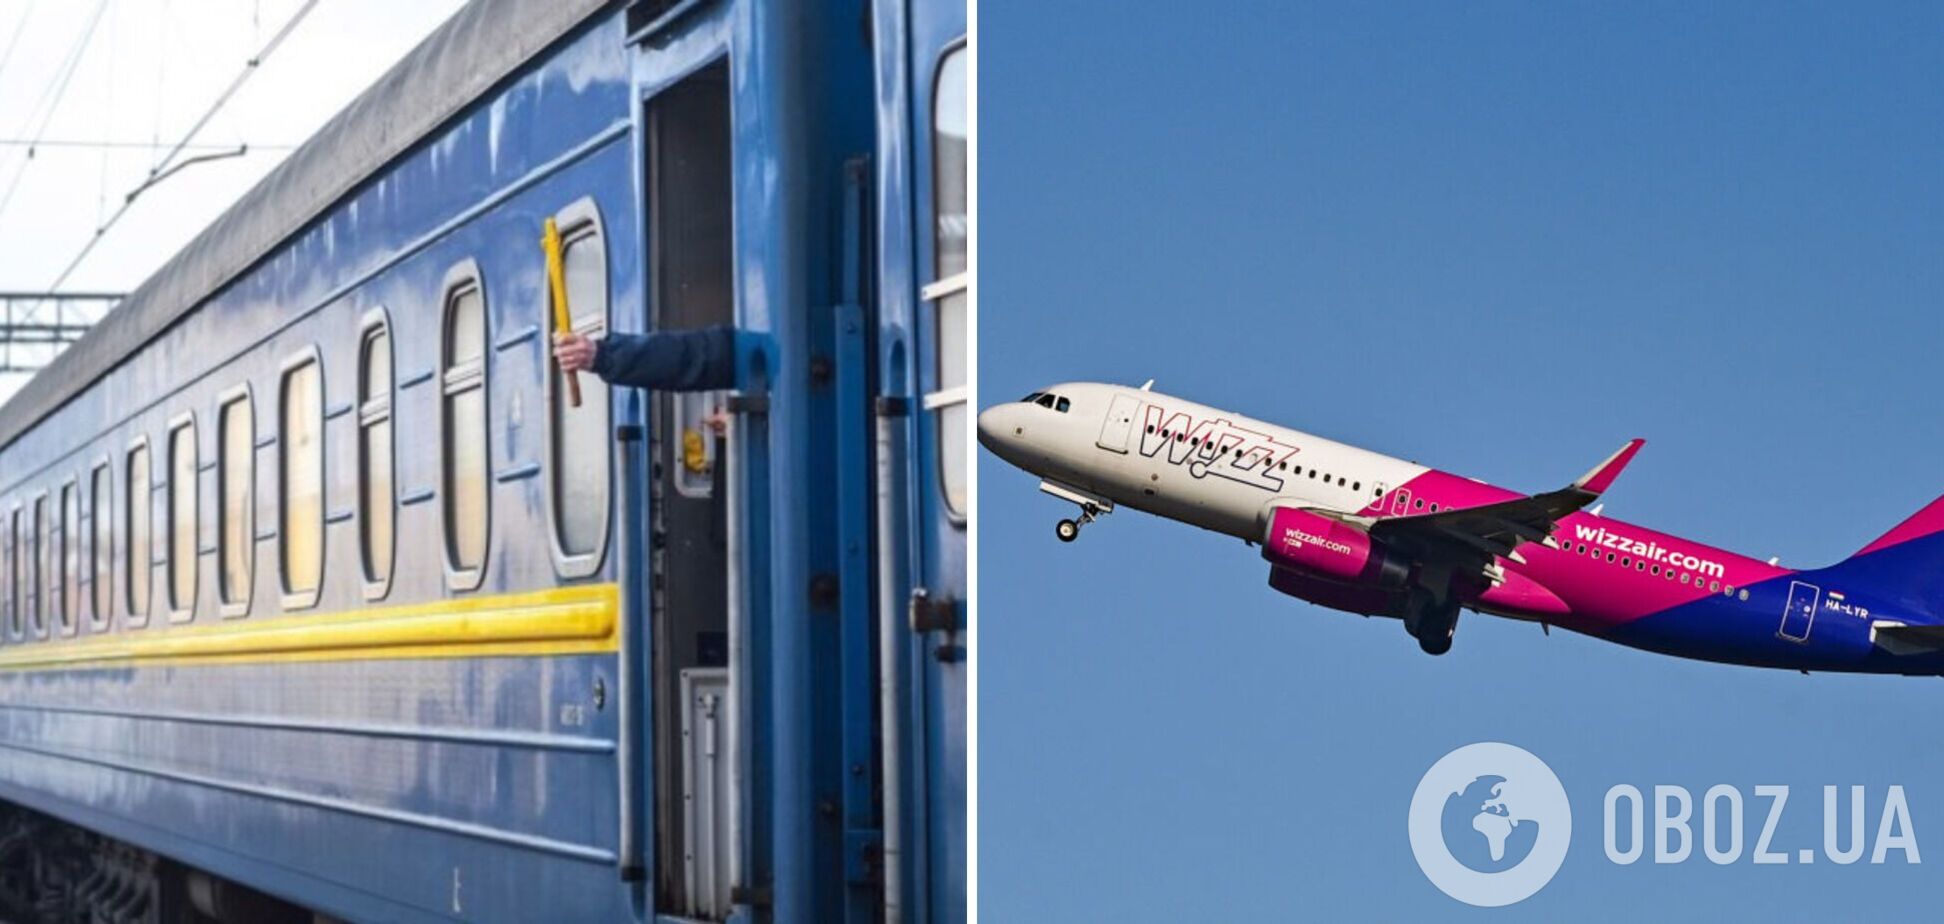 'Укрзализныця' проложила маршрут из Киева на базу Wizz Air в Румынии через Молдову